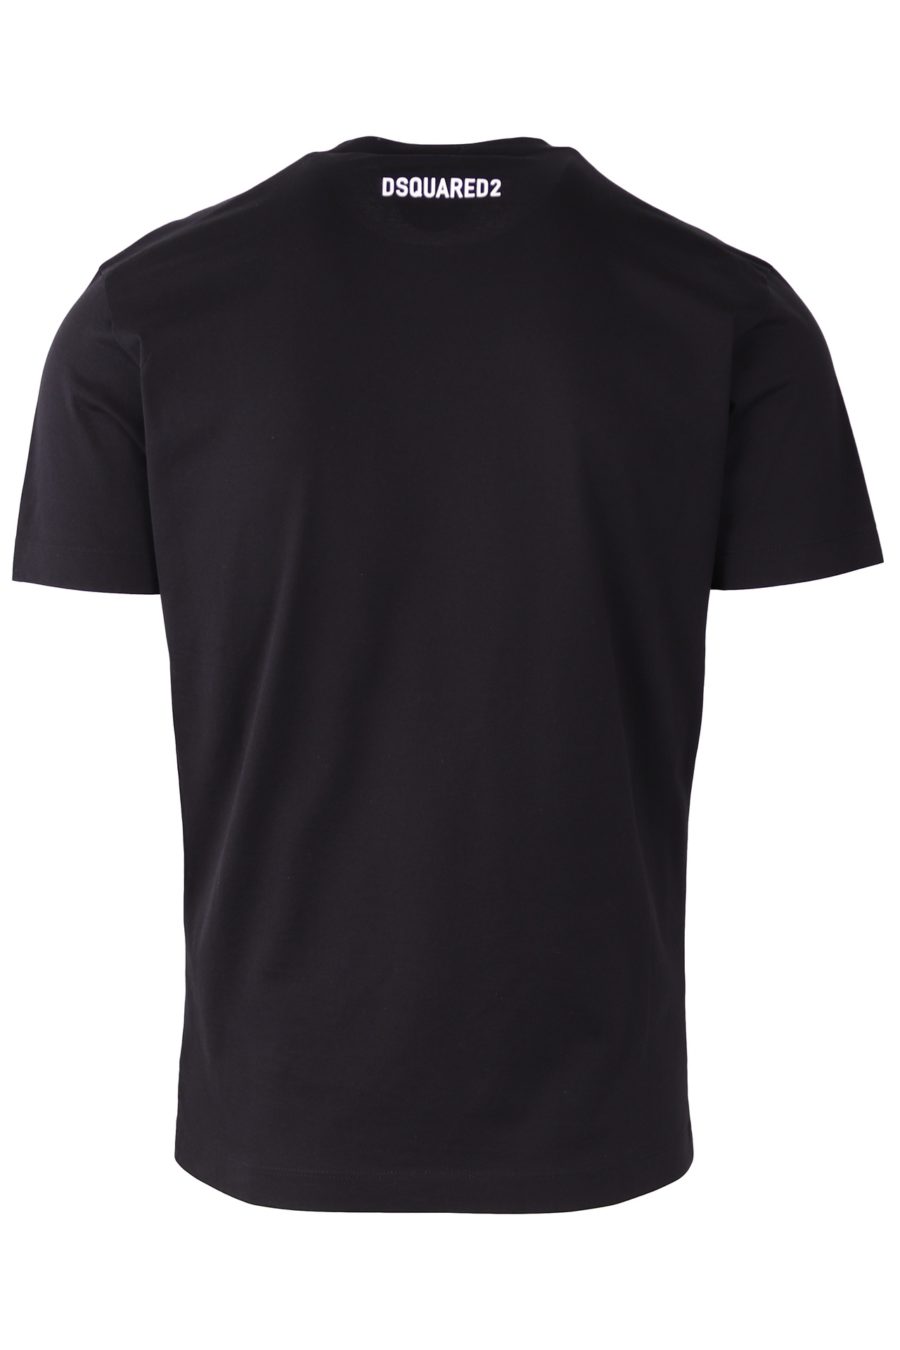 Camiseta Dsquared2 negra logo DSQ2 con efecto espejo - fe9a35d5366a04d10feadd68f1d7db661c2159d0